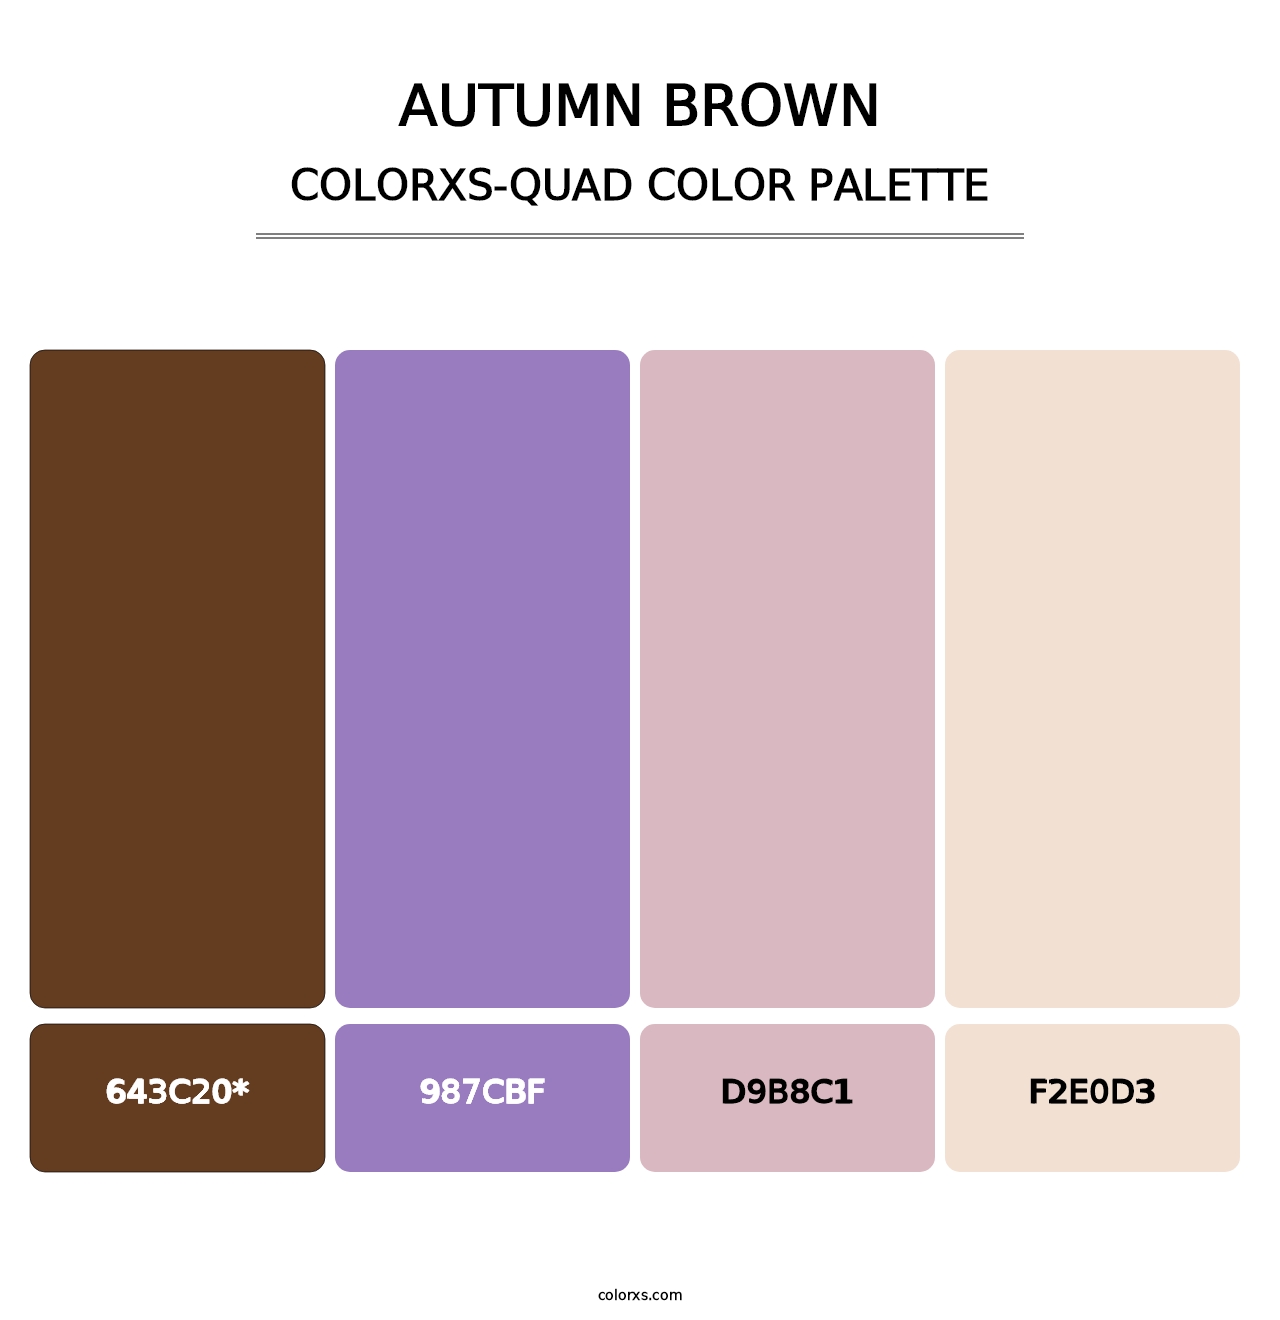 Autumn Brown - Colorxs Quad Palette